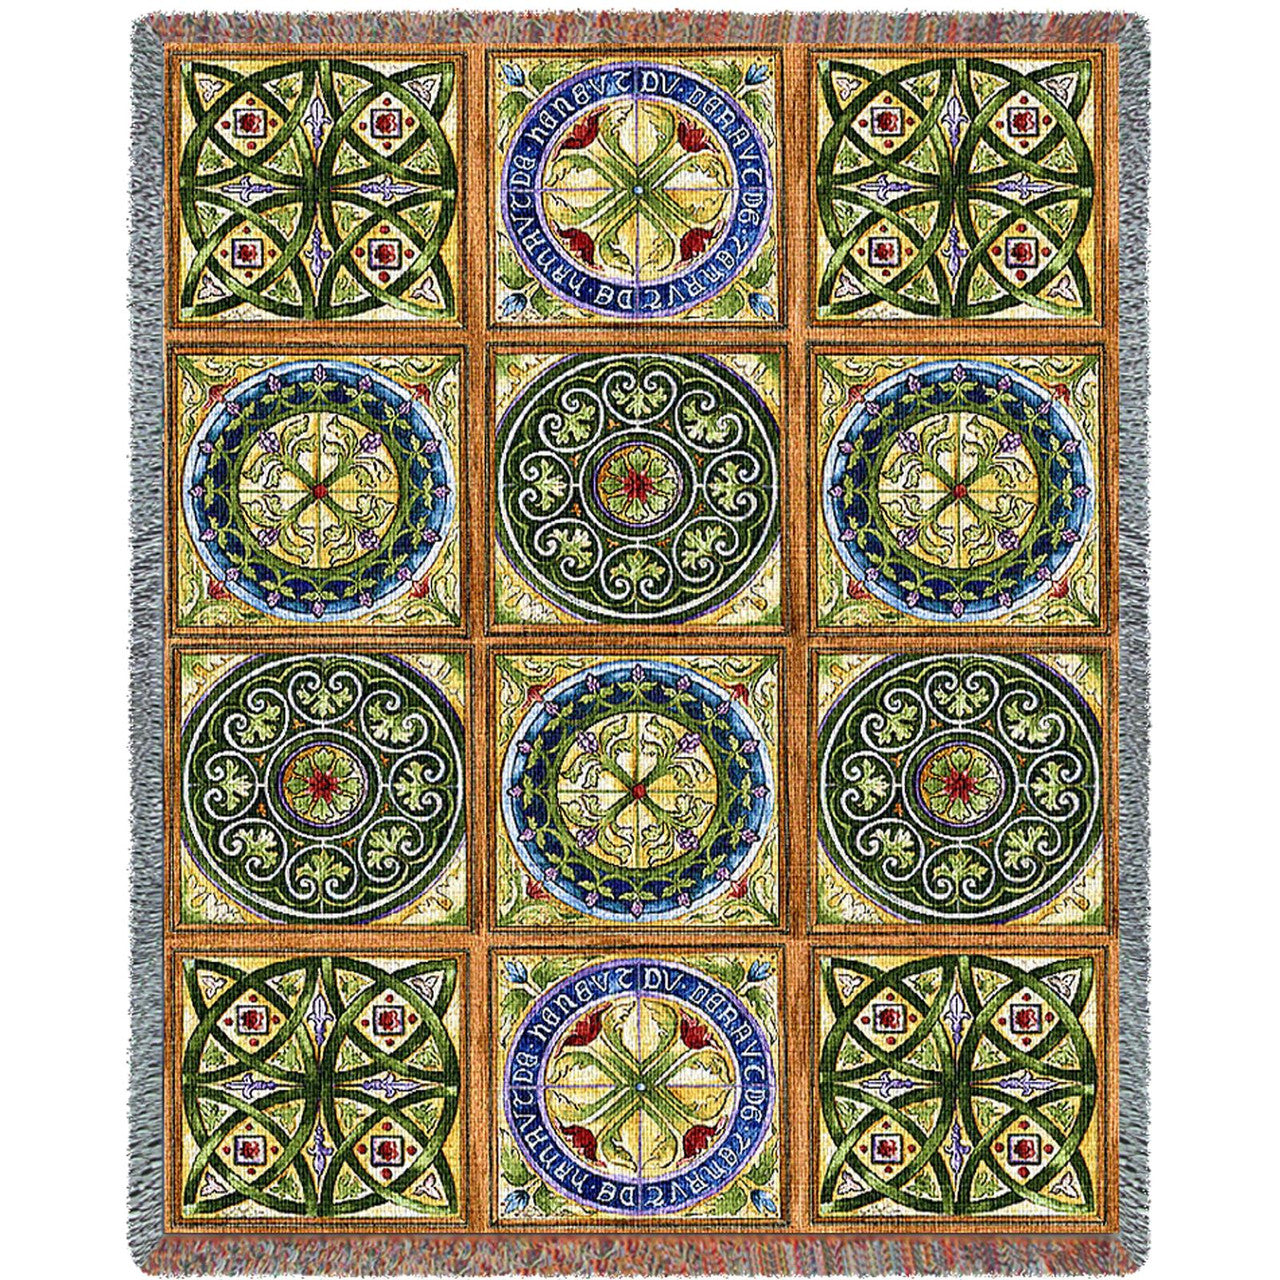 Celtic Rosette Tapestry Cotton Woven Blanket